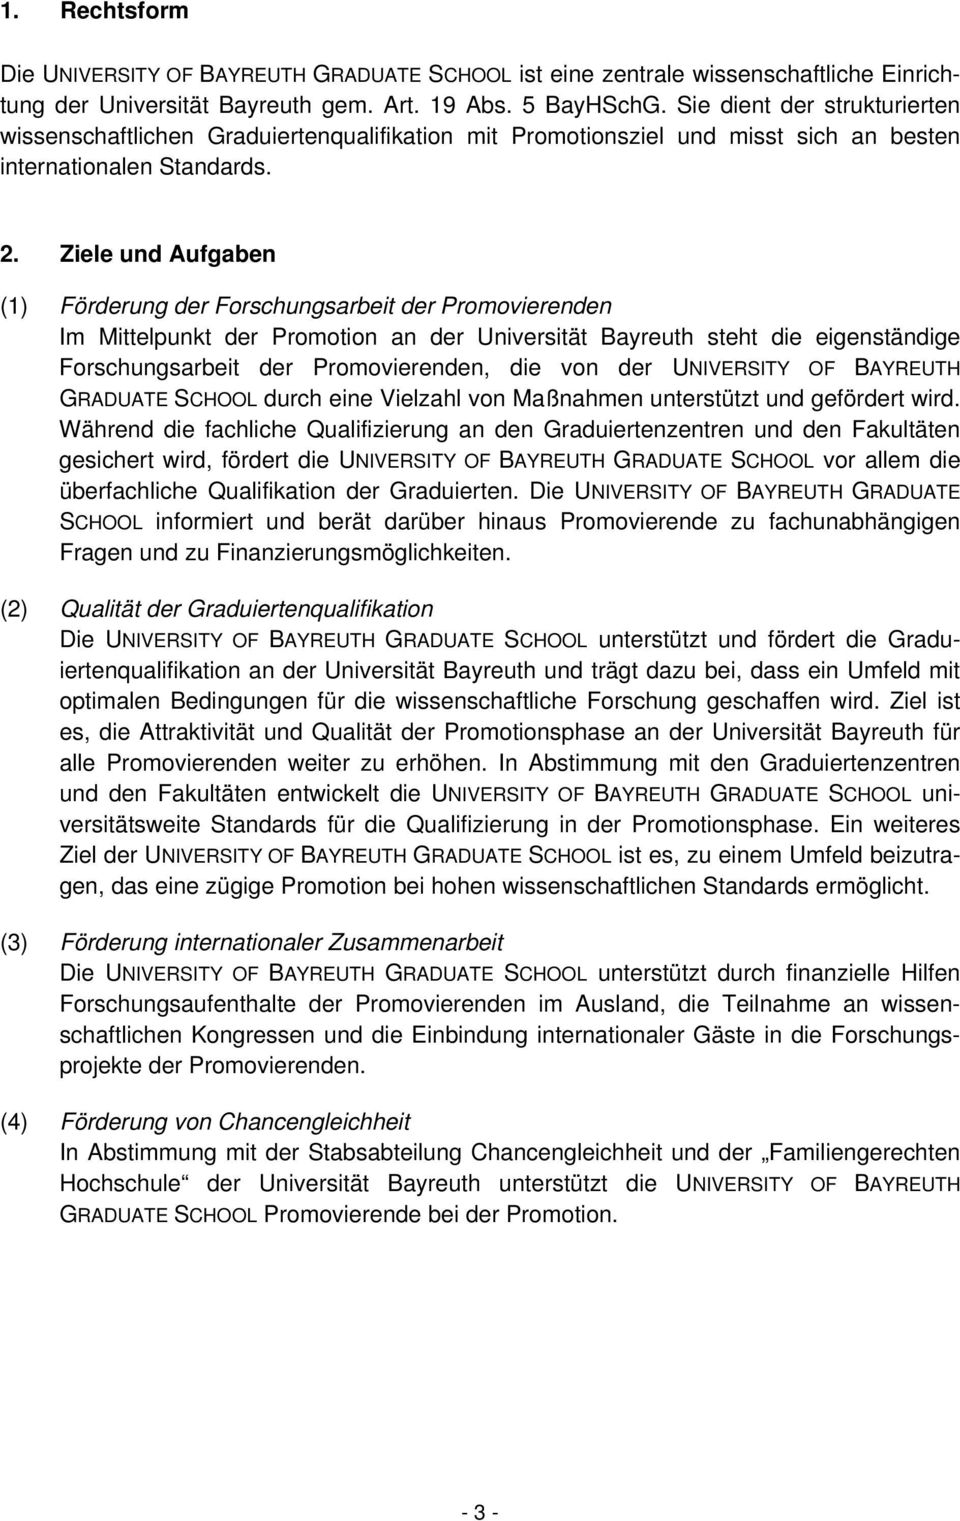 Ziele und Aufgaben (1) Förderung der Forschungsarbeit der Promovierenden Im Mittelpunkt der Promotion an der Universität Bayreuth steht die eigenständige Forschungsarbeit der Promovierenden, die von